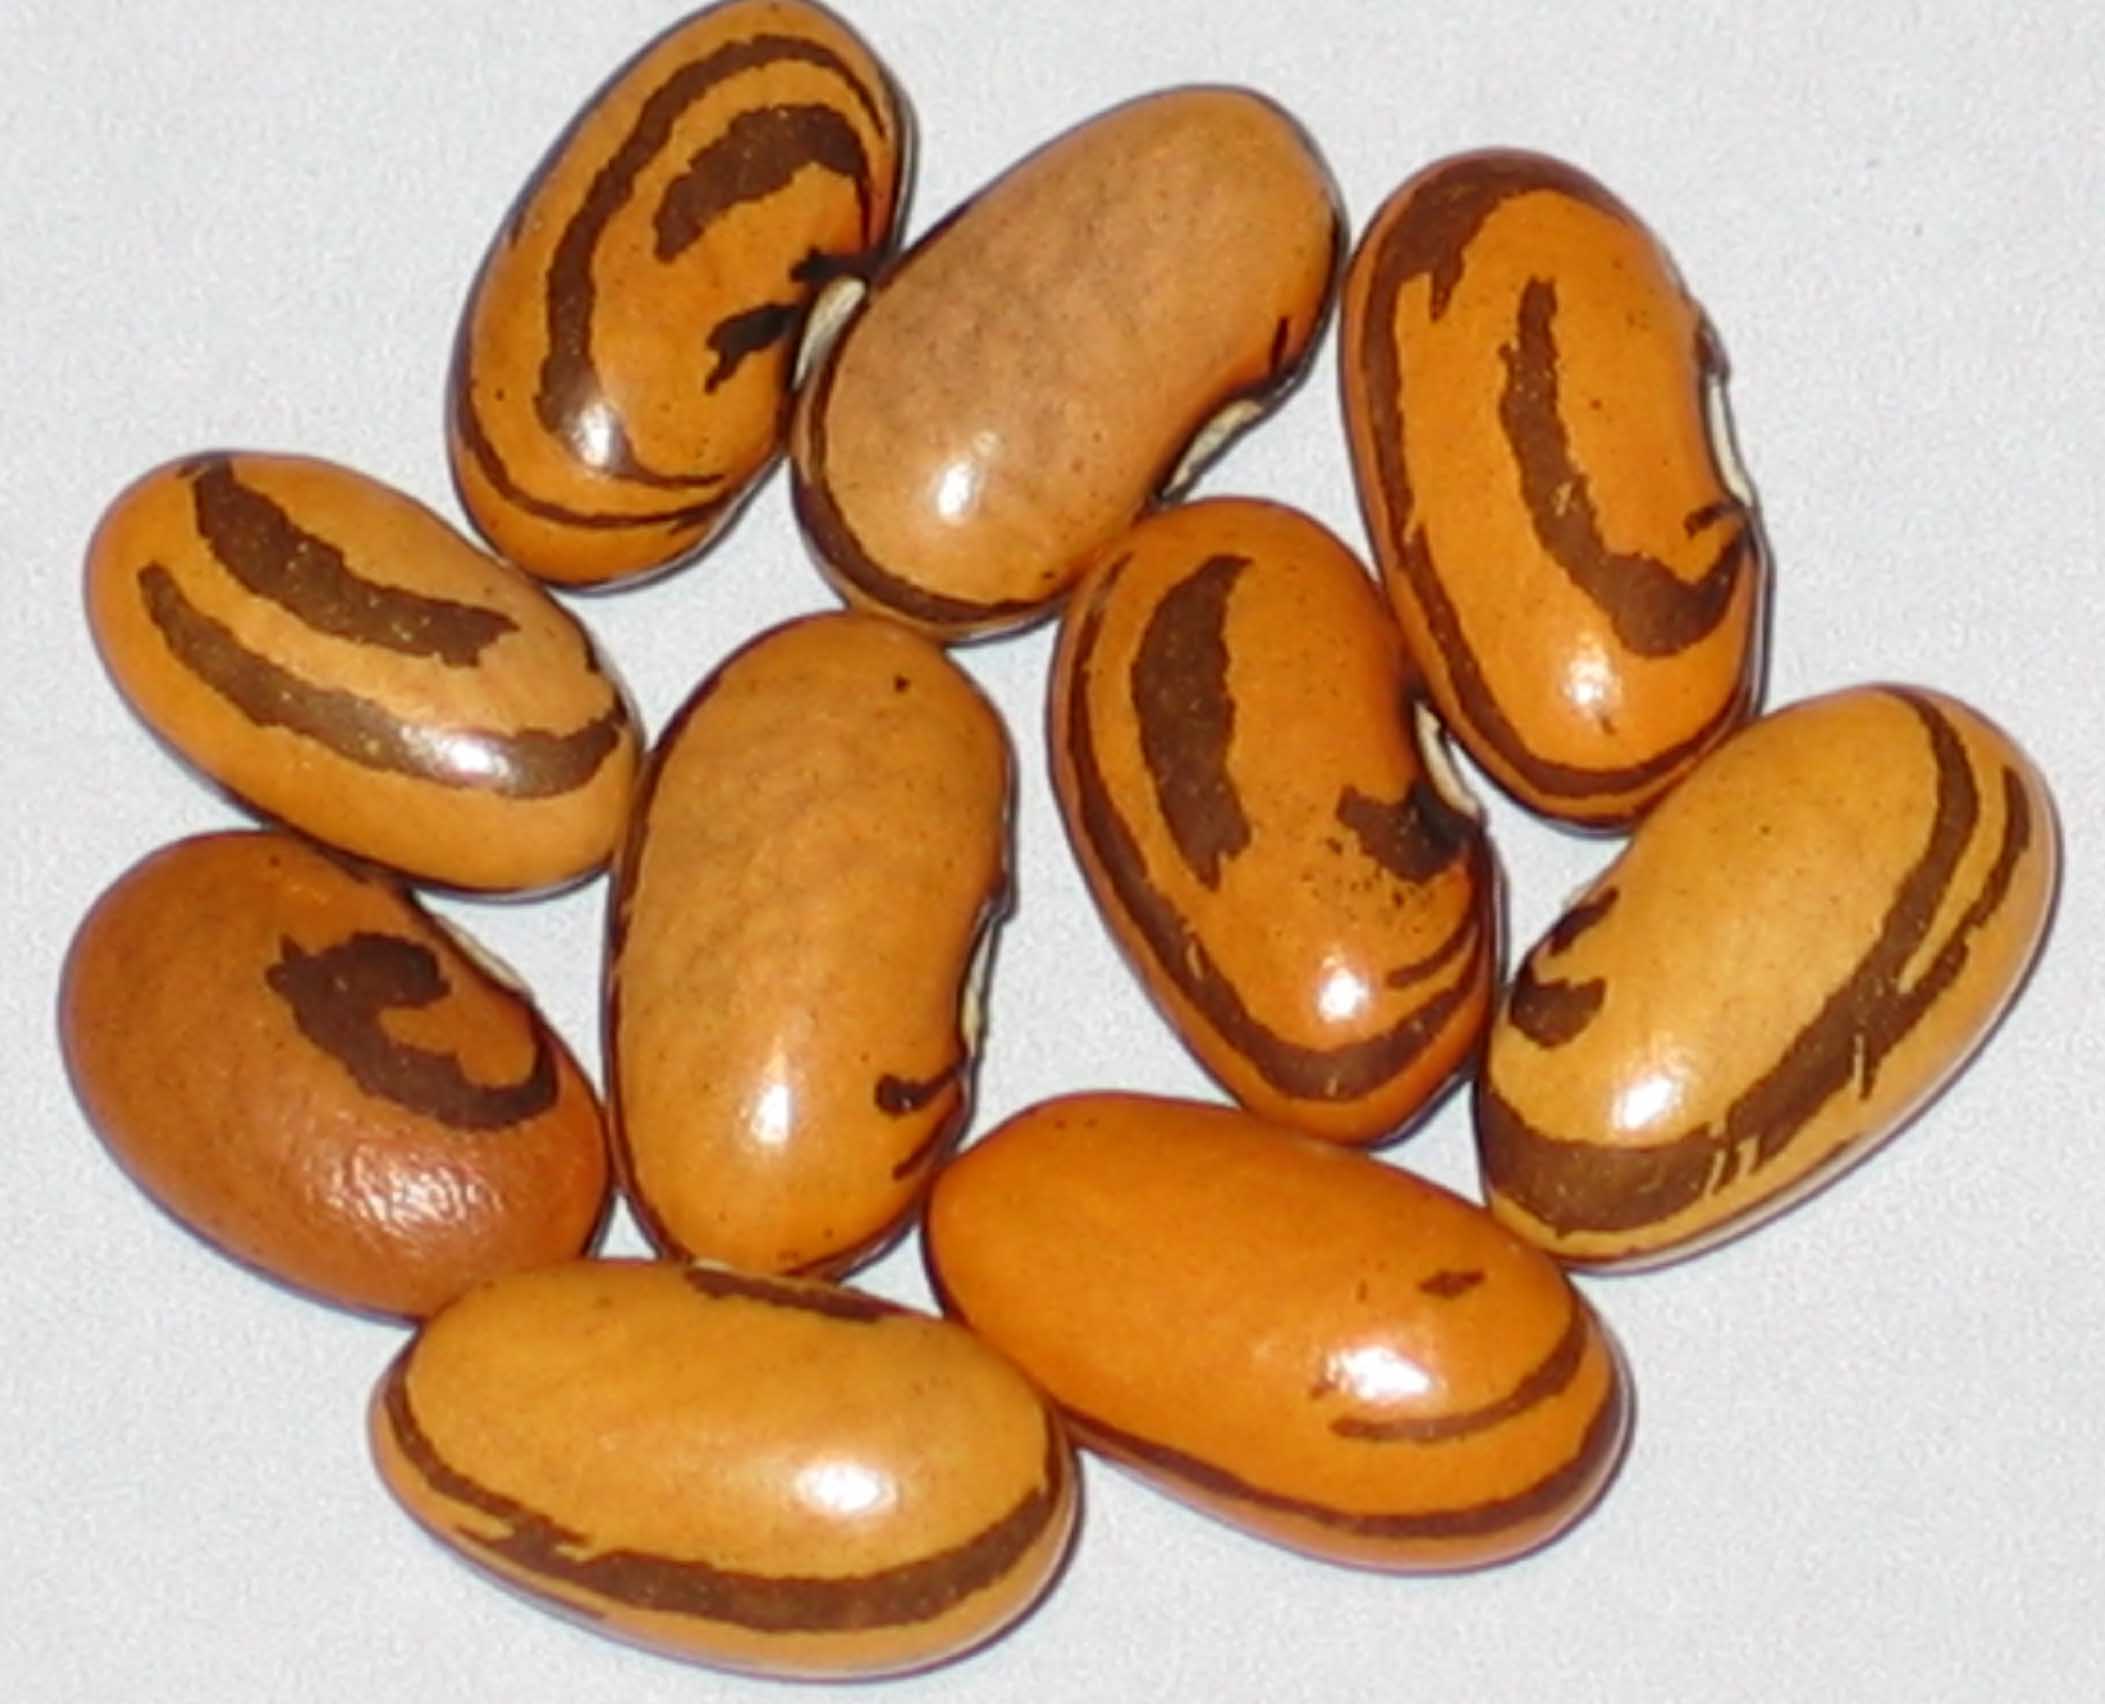 image of Haricot Crevette beans